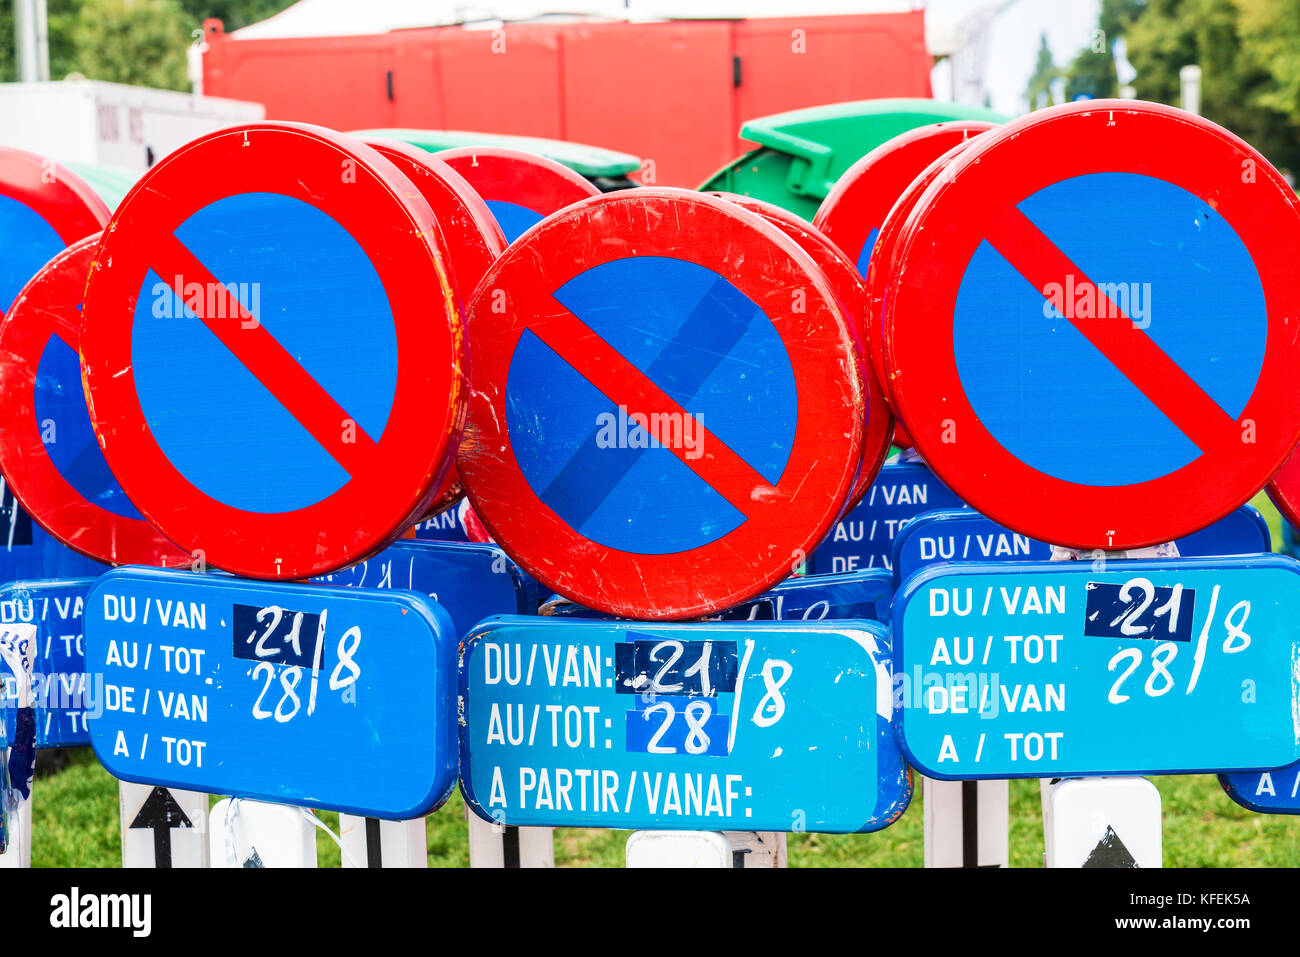 Tas de panneaux de circulation interdisant le stationnement à Bruxelles, Belgique Banque D'Images